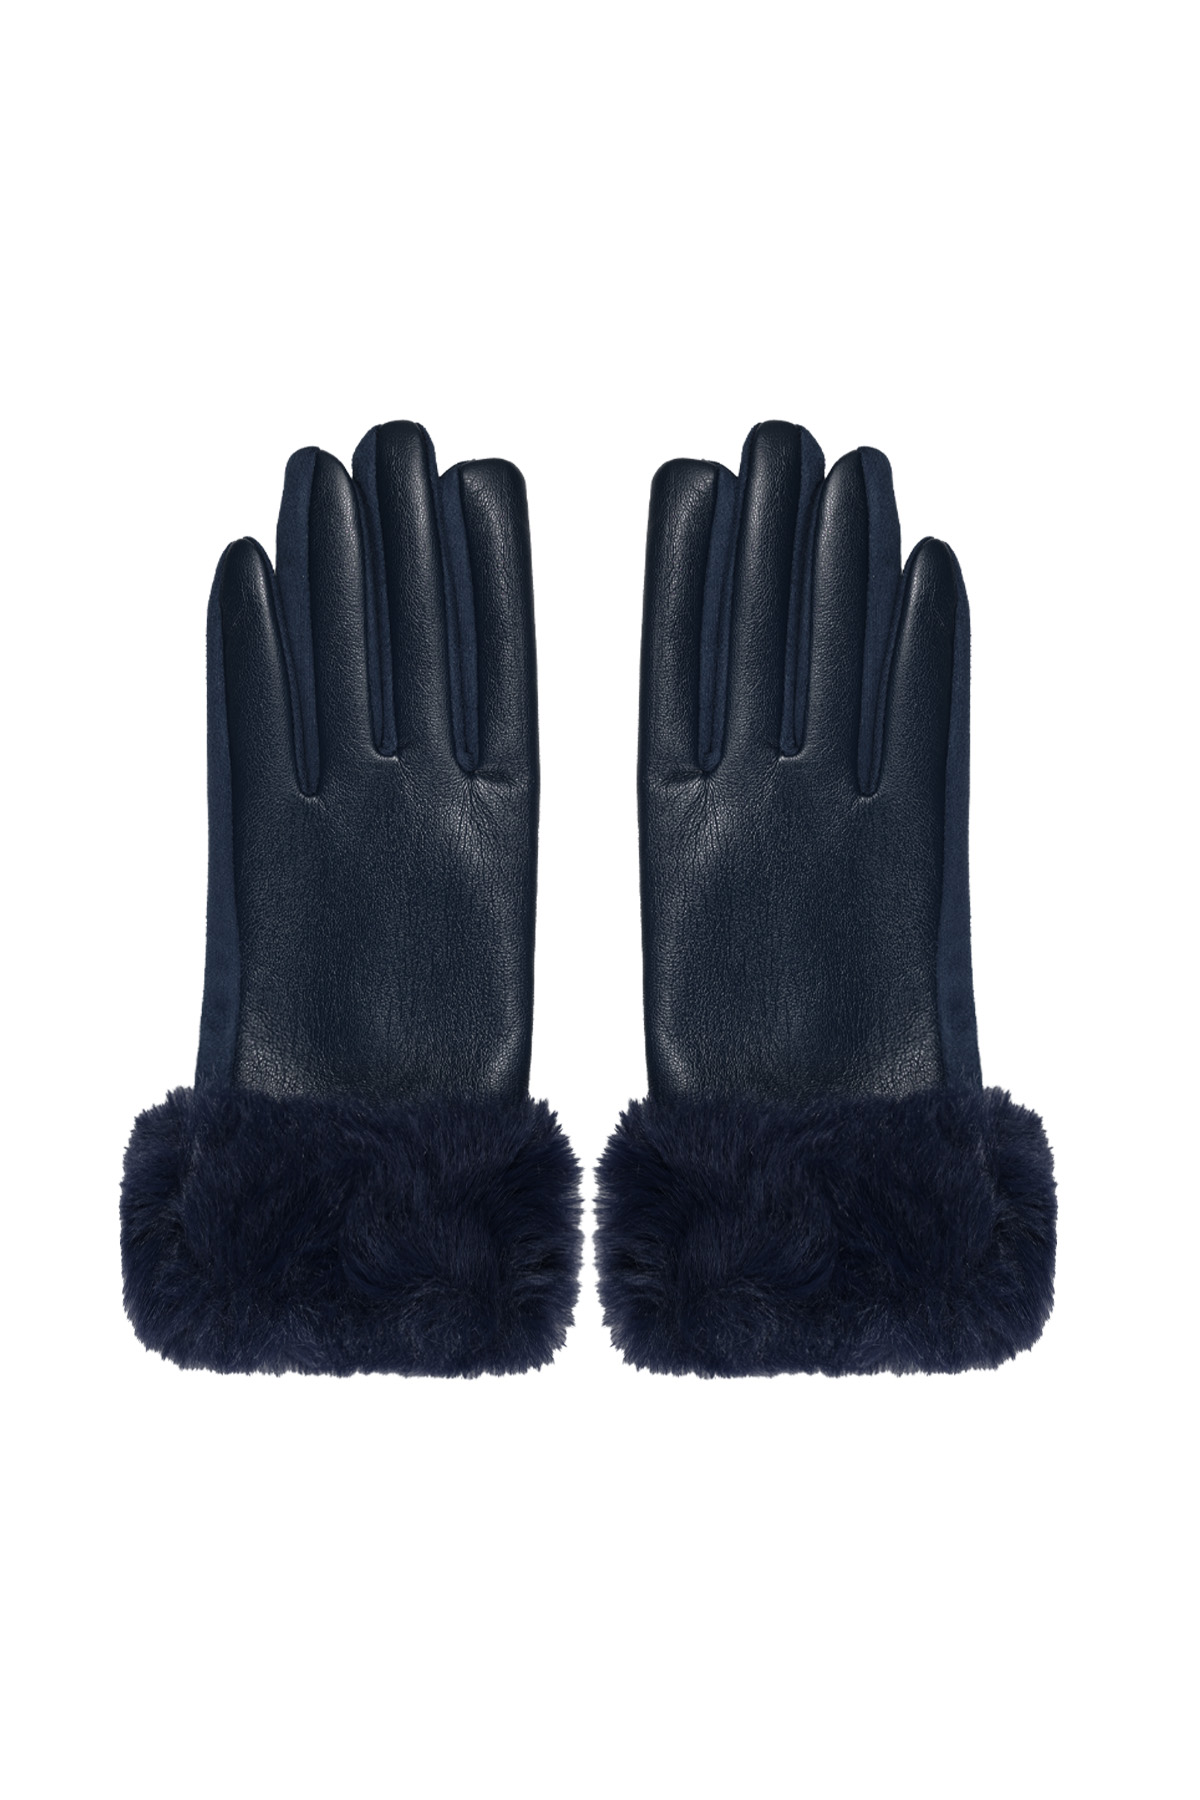 Handschoenen fluf - navy blauw h5 